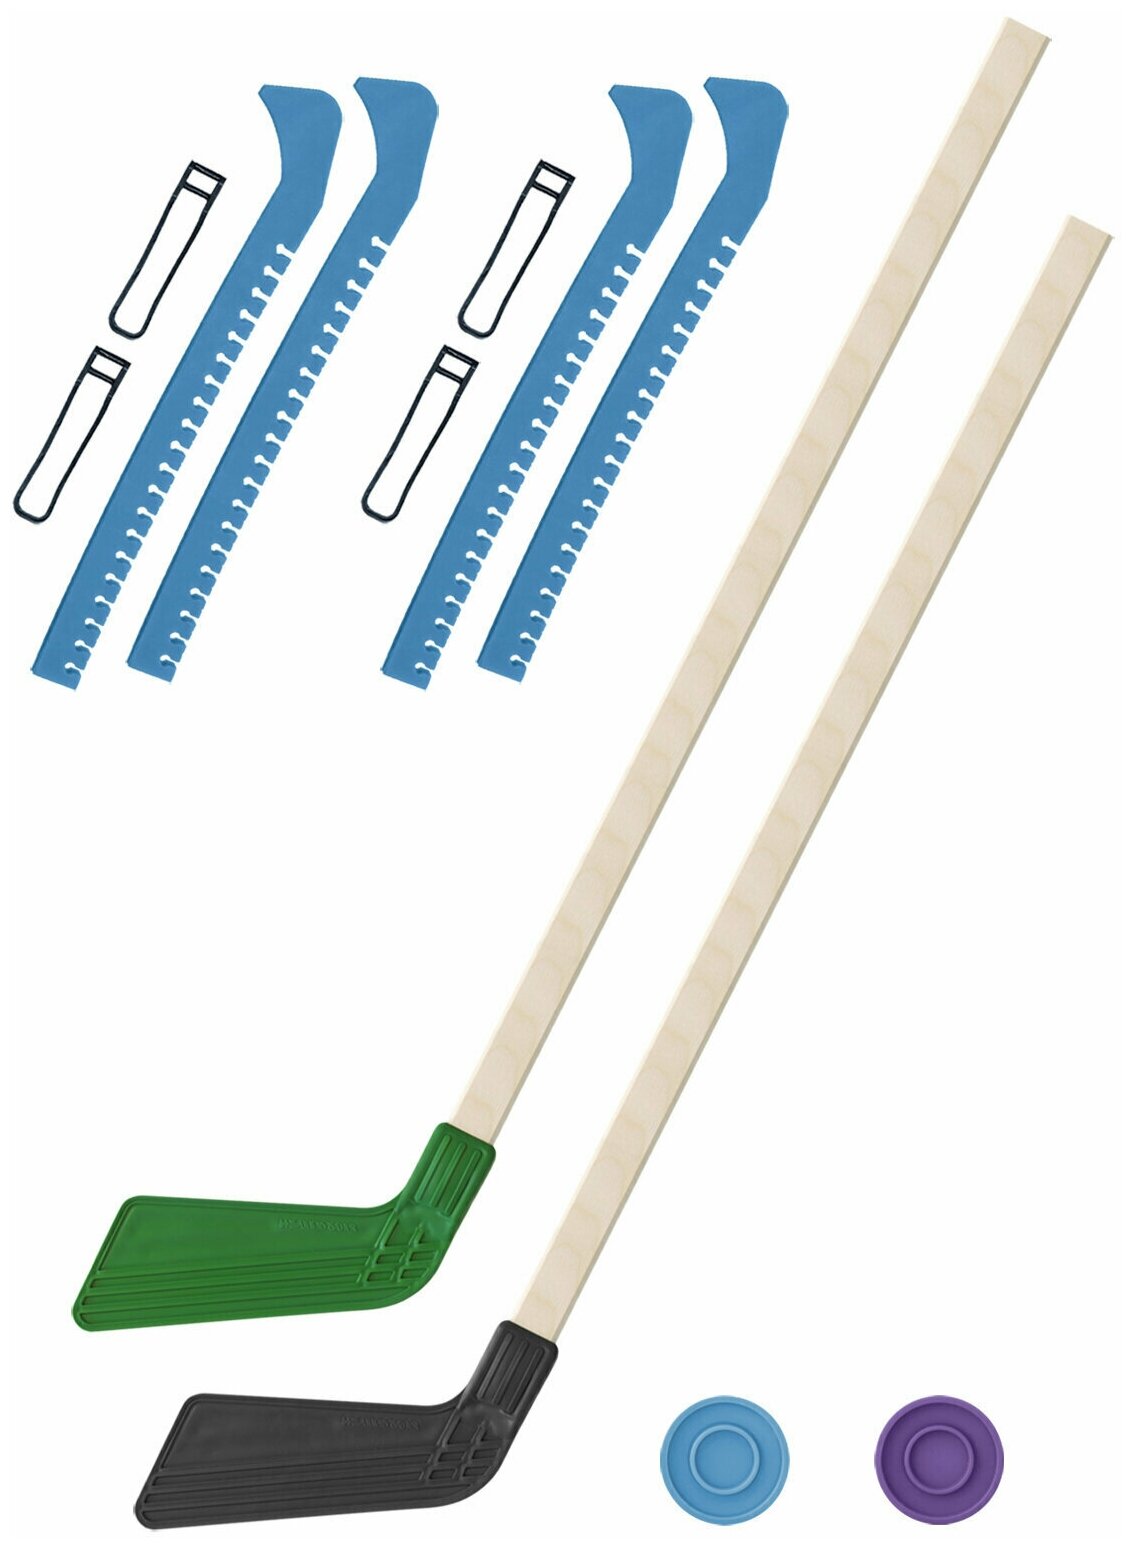 Детский хоккейный набор для игр на улице Клюшка хоккейная детская 2 шт зелёная и чёрная 80 см.+2 шайбы + Чехлы для коньков голубые - 2 шт. Винтер